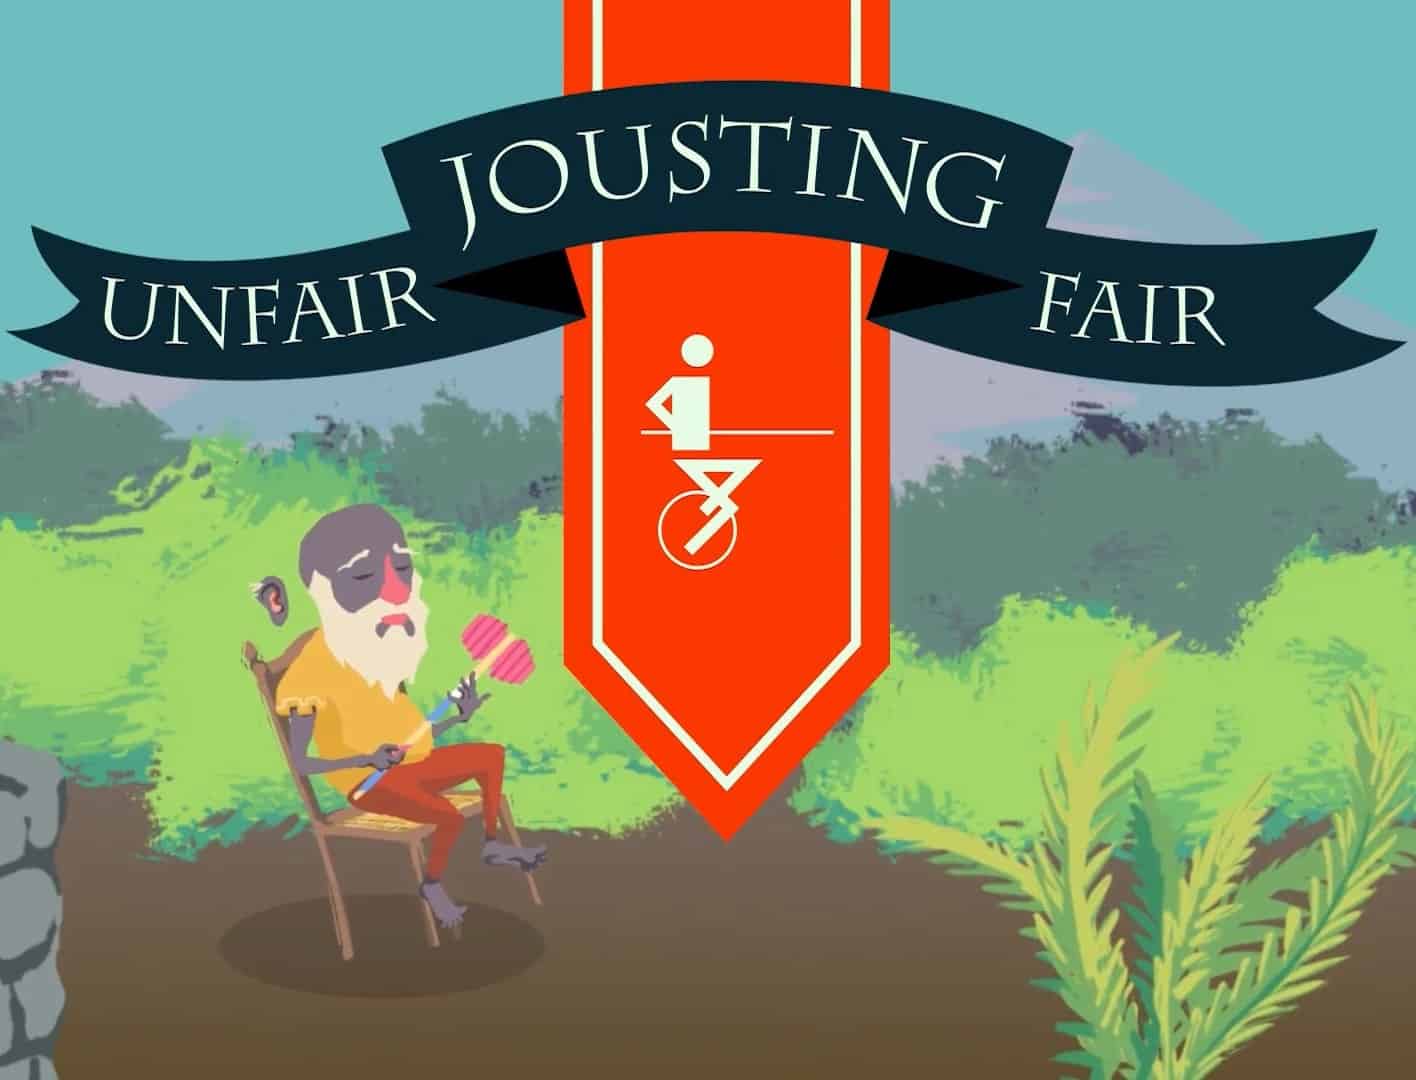 Unfair Jousting Fair